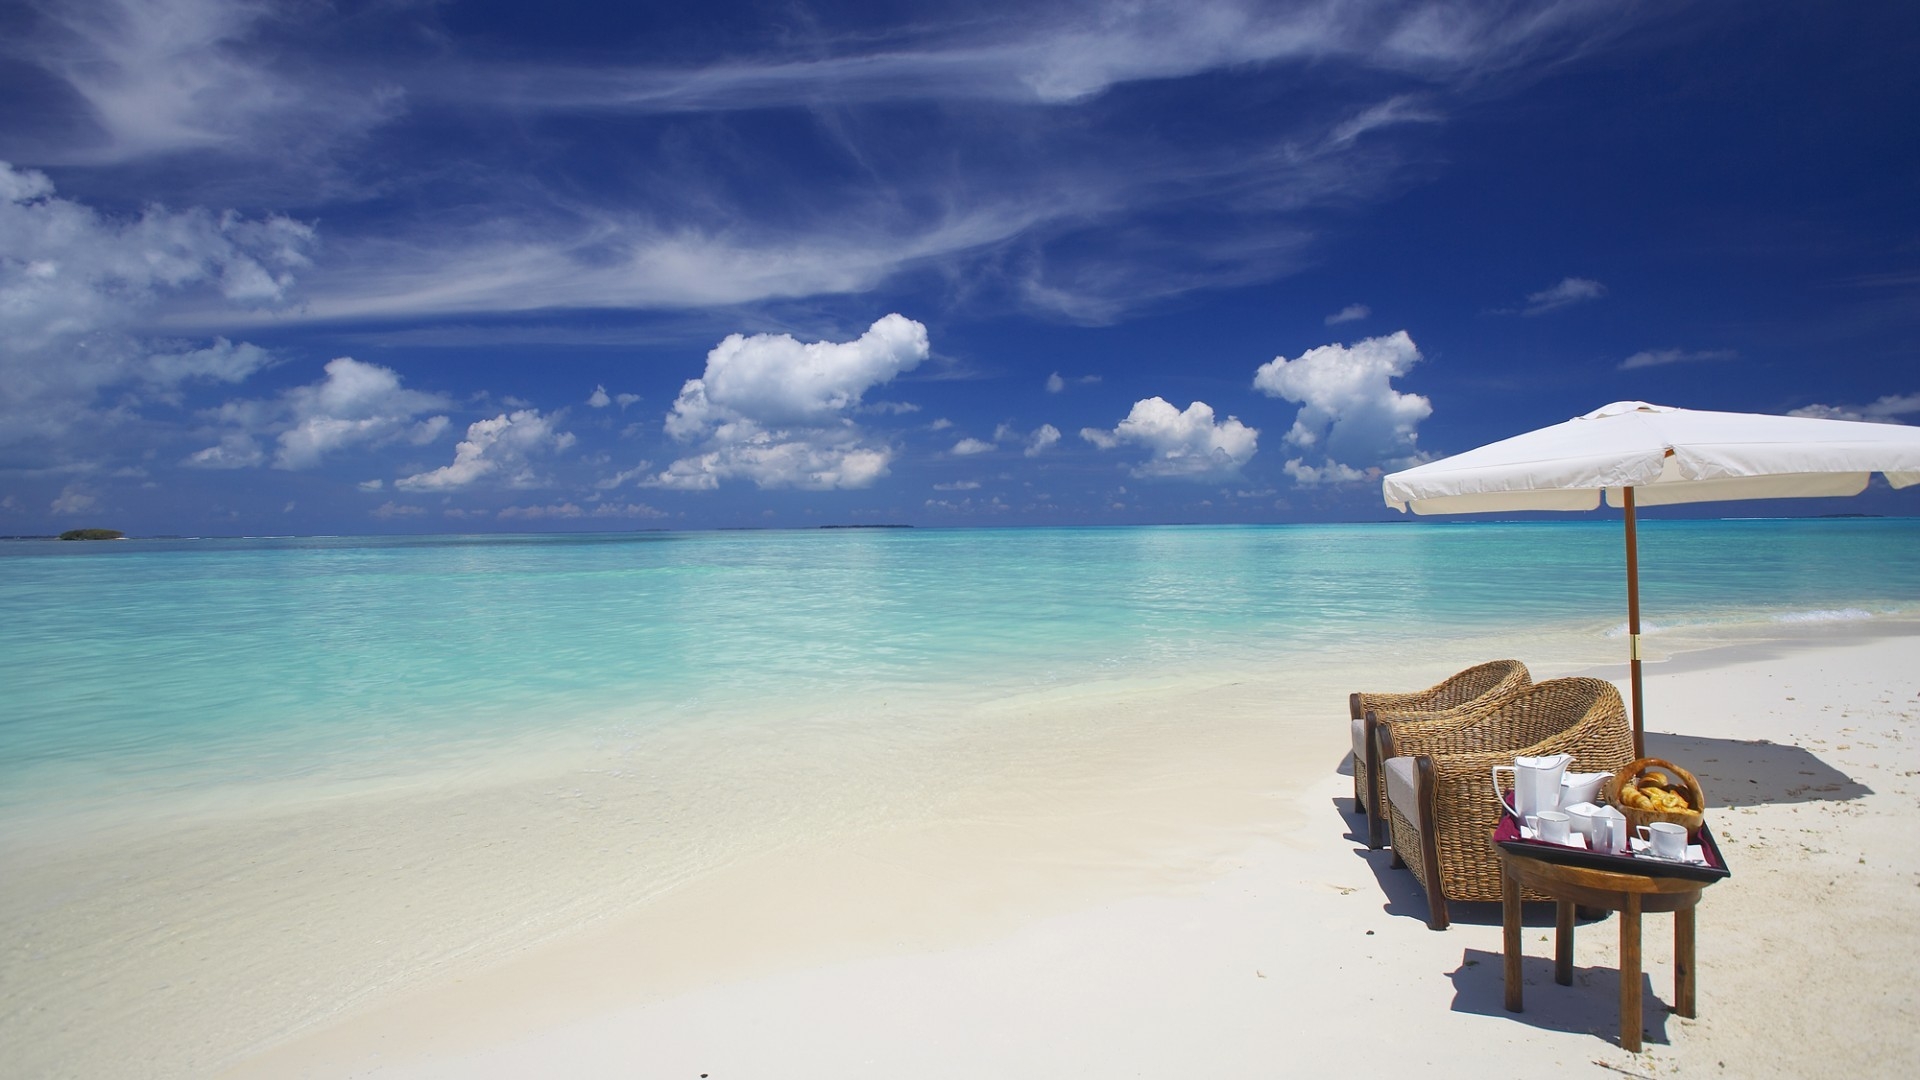 Private Beach Maldives for 1920 x 1080 HDTV 1080p resolution